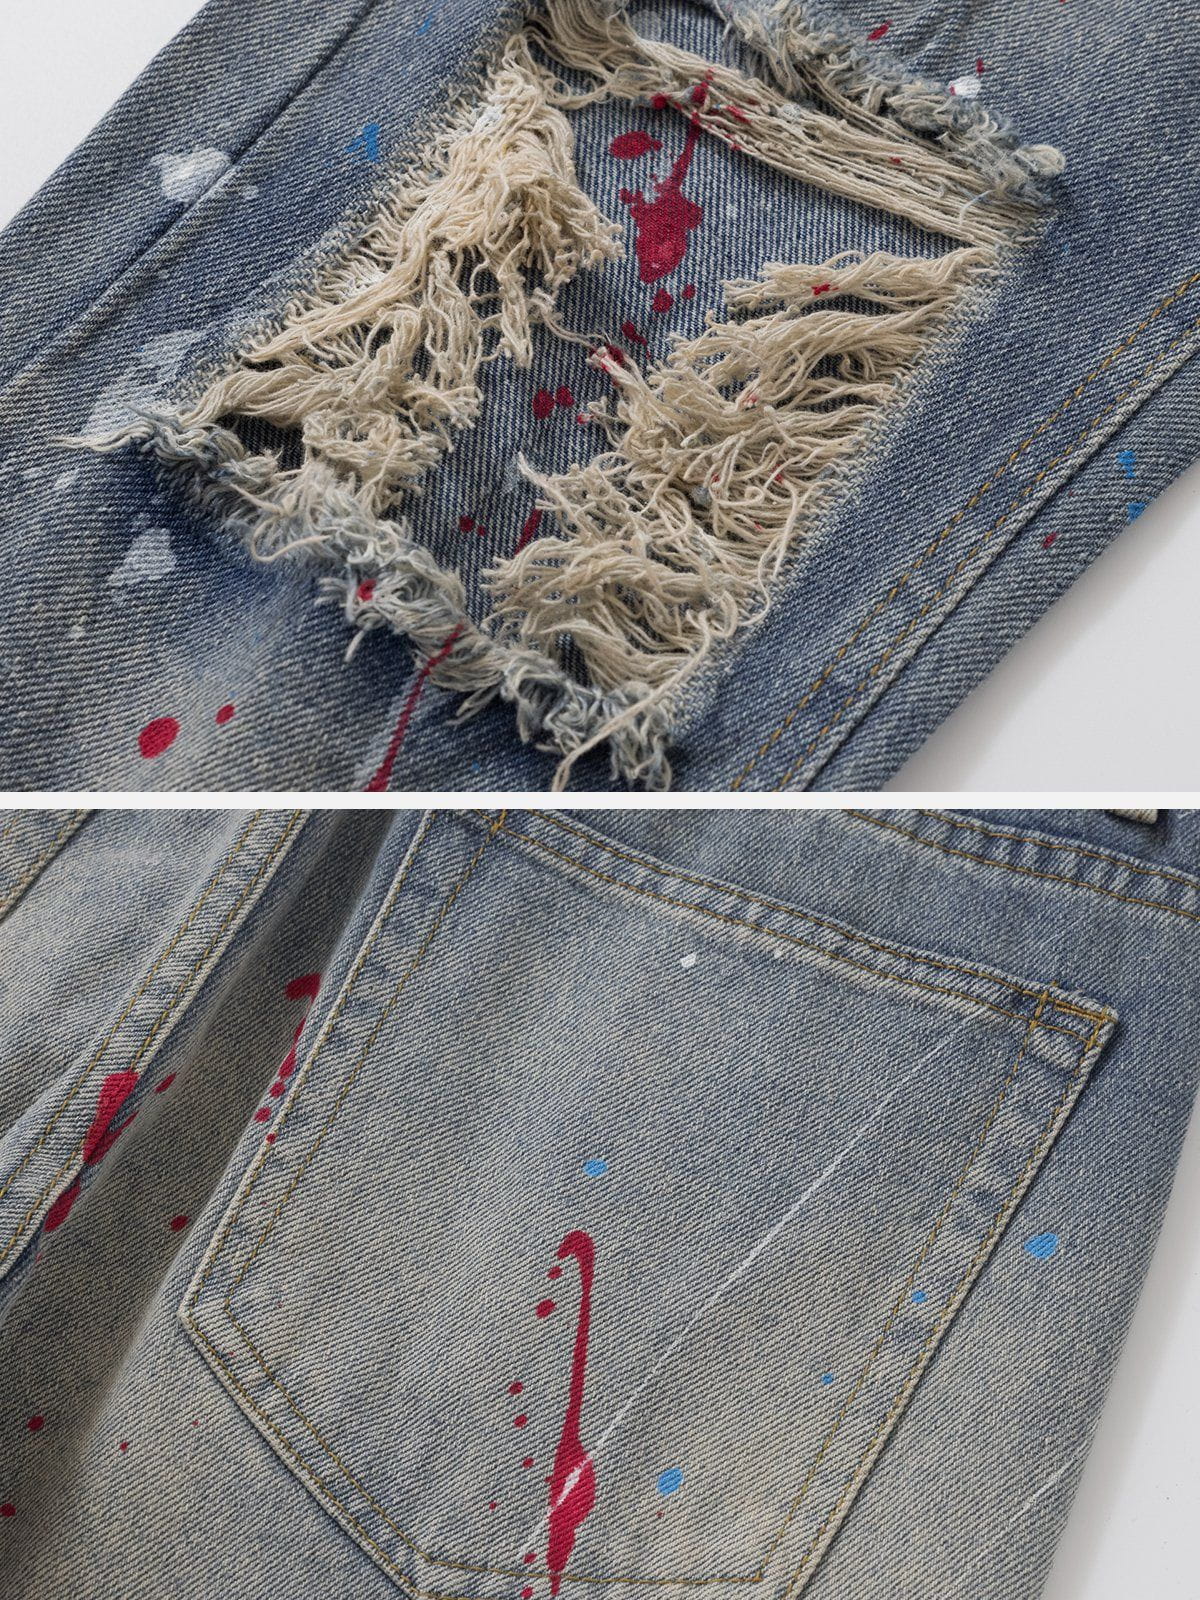 Eprezzy® - Distressed Splashed Ink Graffiti Jeans Streetwear Fashion - eprezzy.com